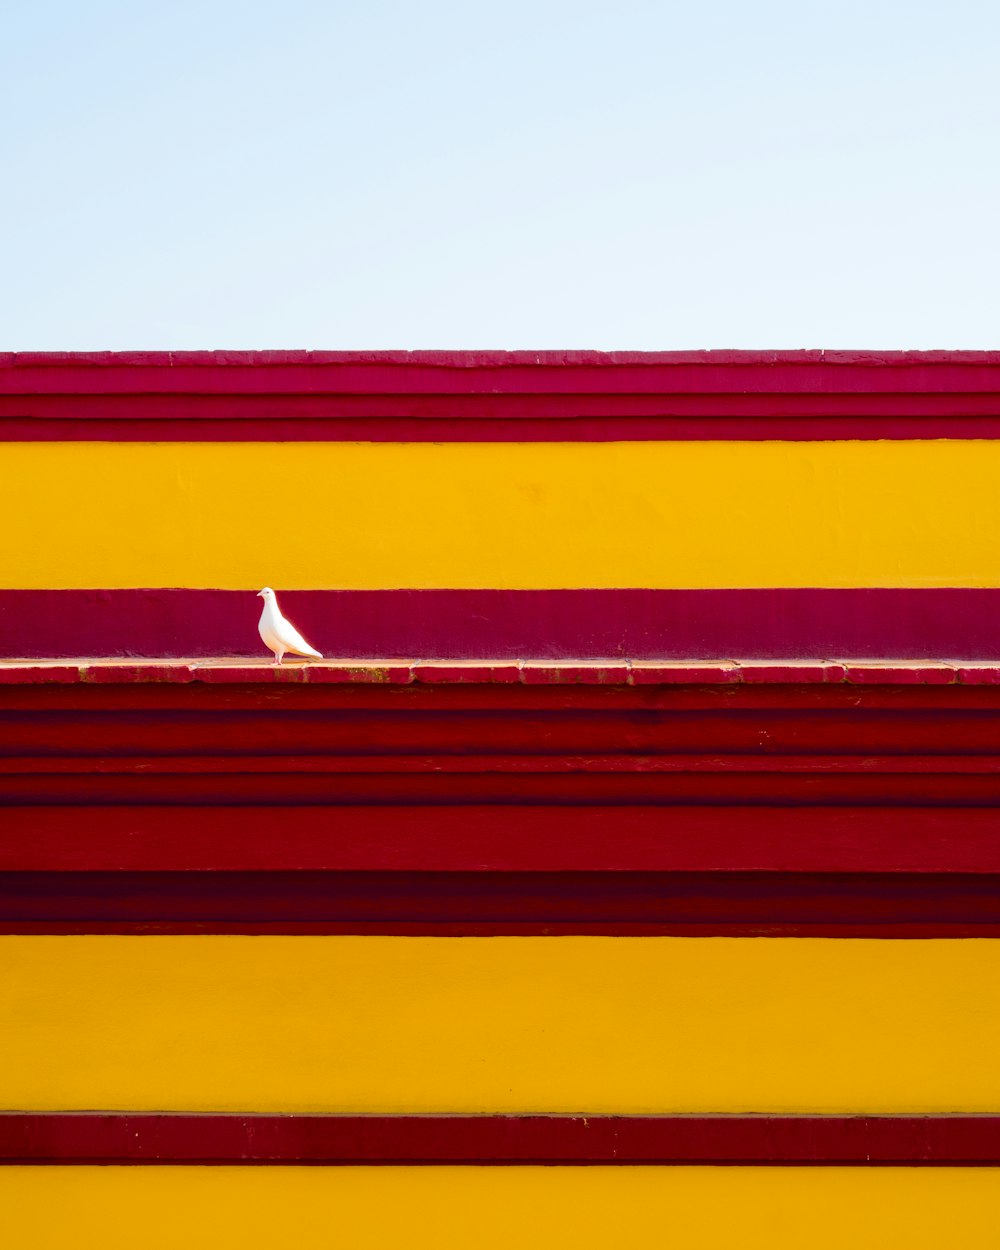 Ein weißer Vogel, der auf einem rot-gelben Gebäude sitzt